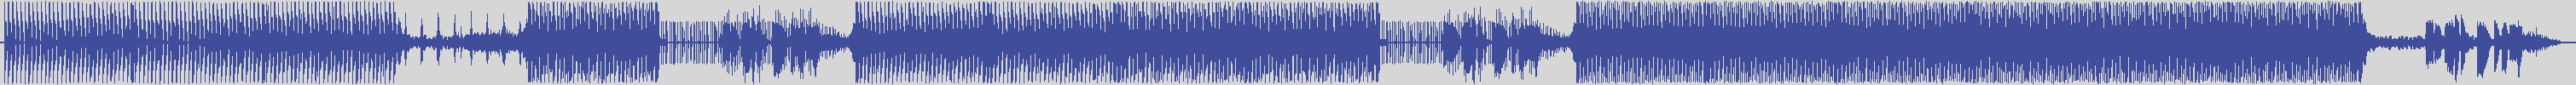 nf_boyz_records [NFY028] Klimt - Legere [Continuos Mix] audio wave form